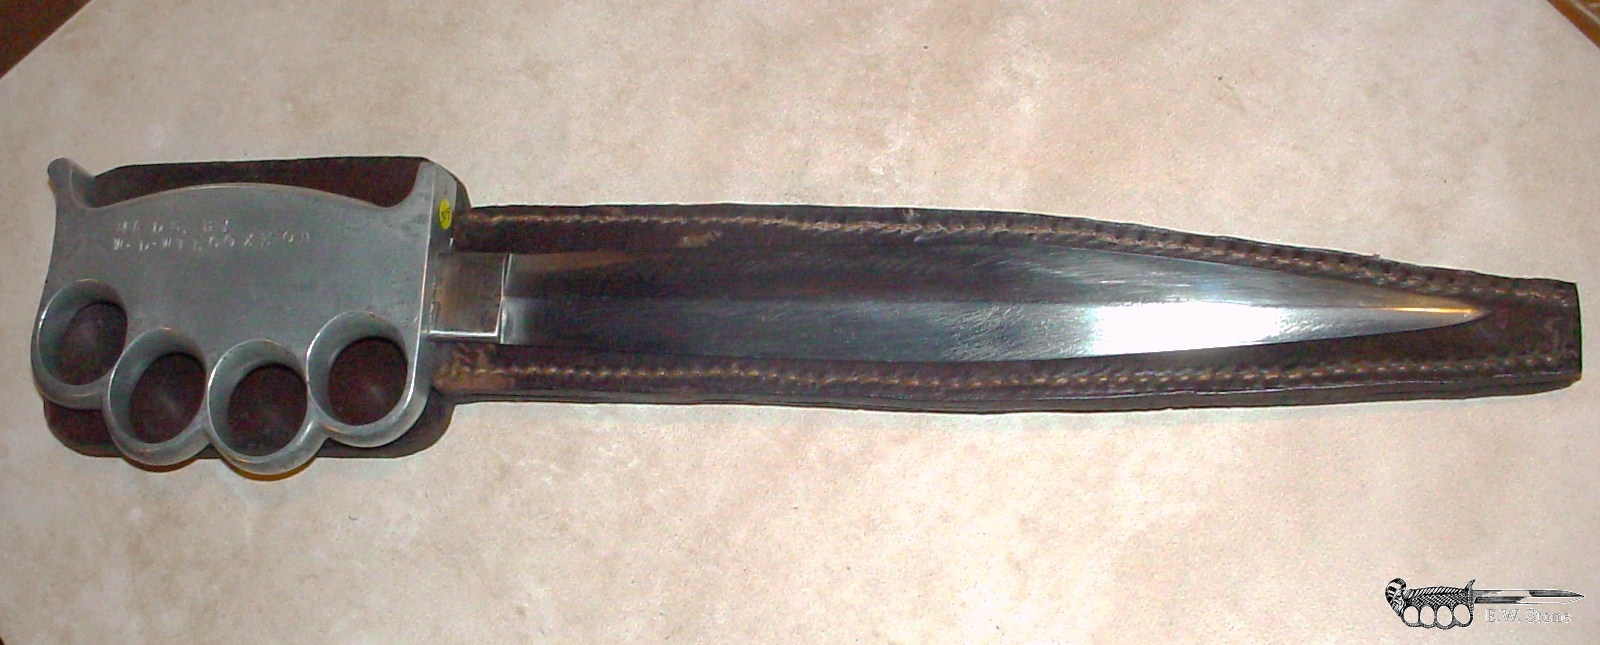 W. D. Wilcoxson Knuckle Knife